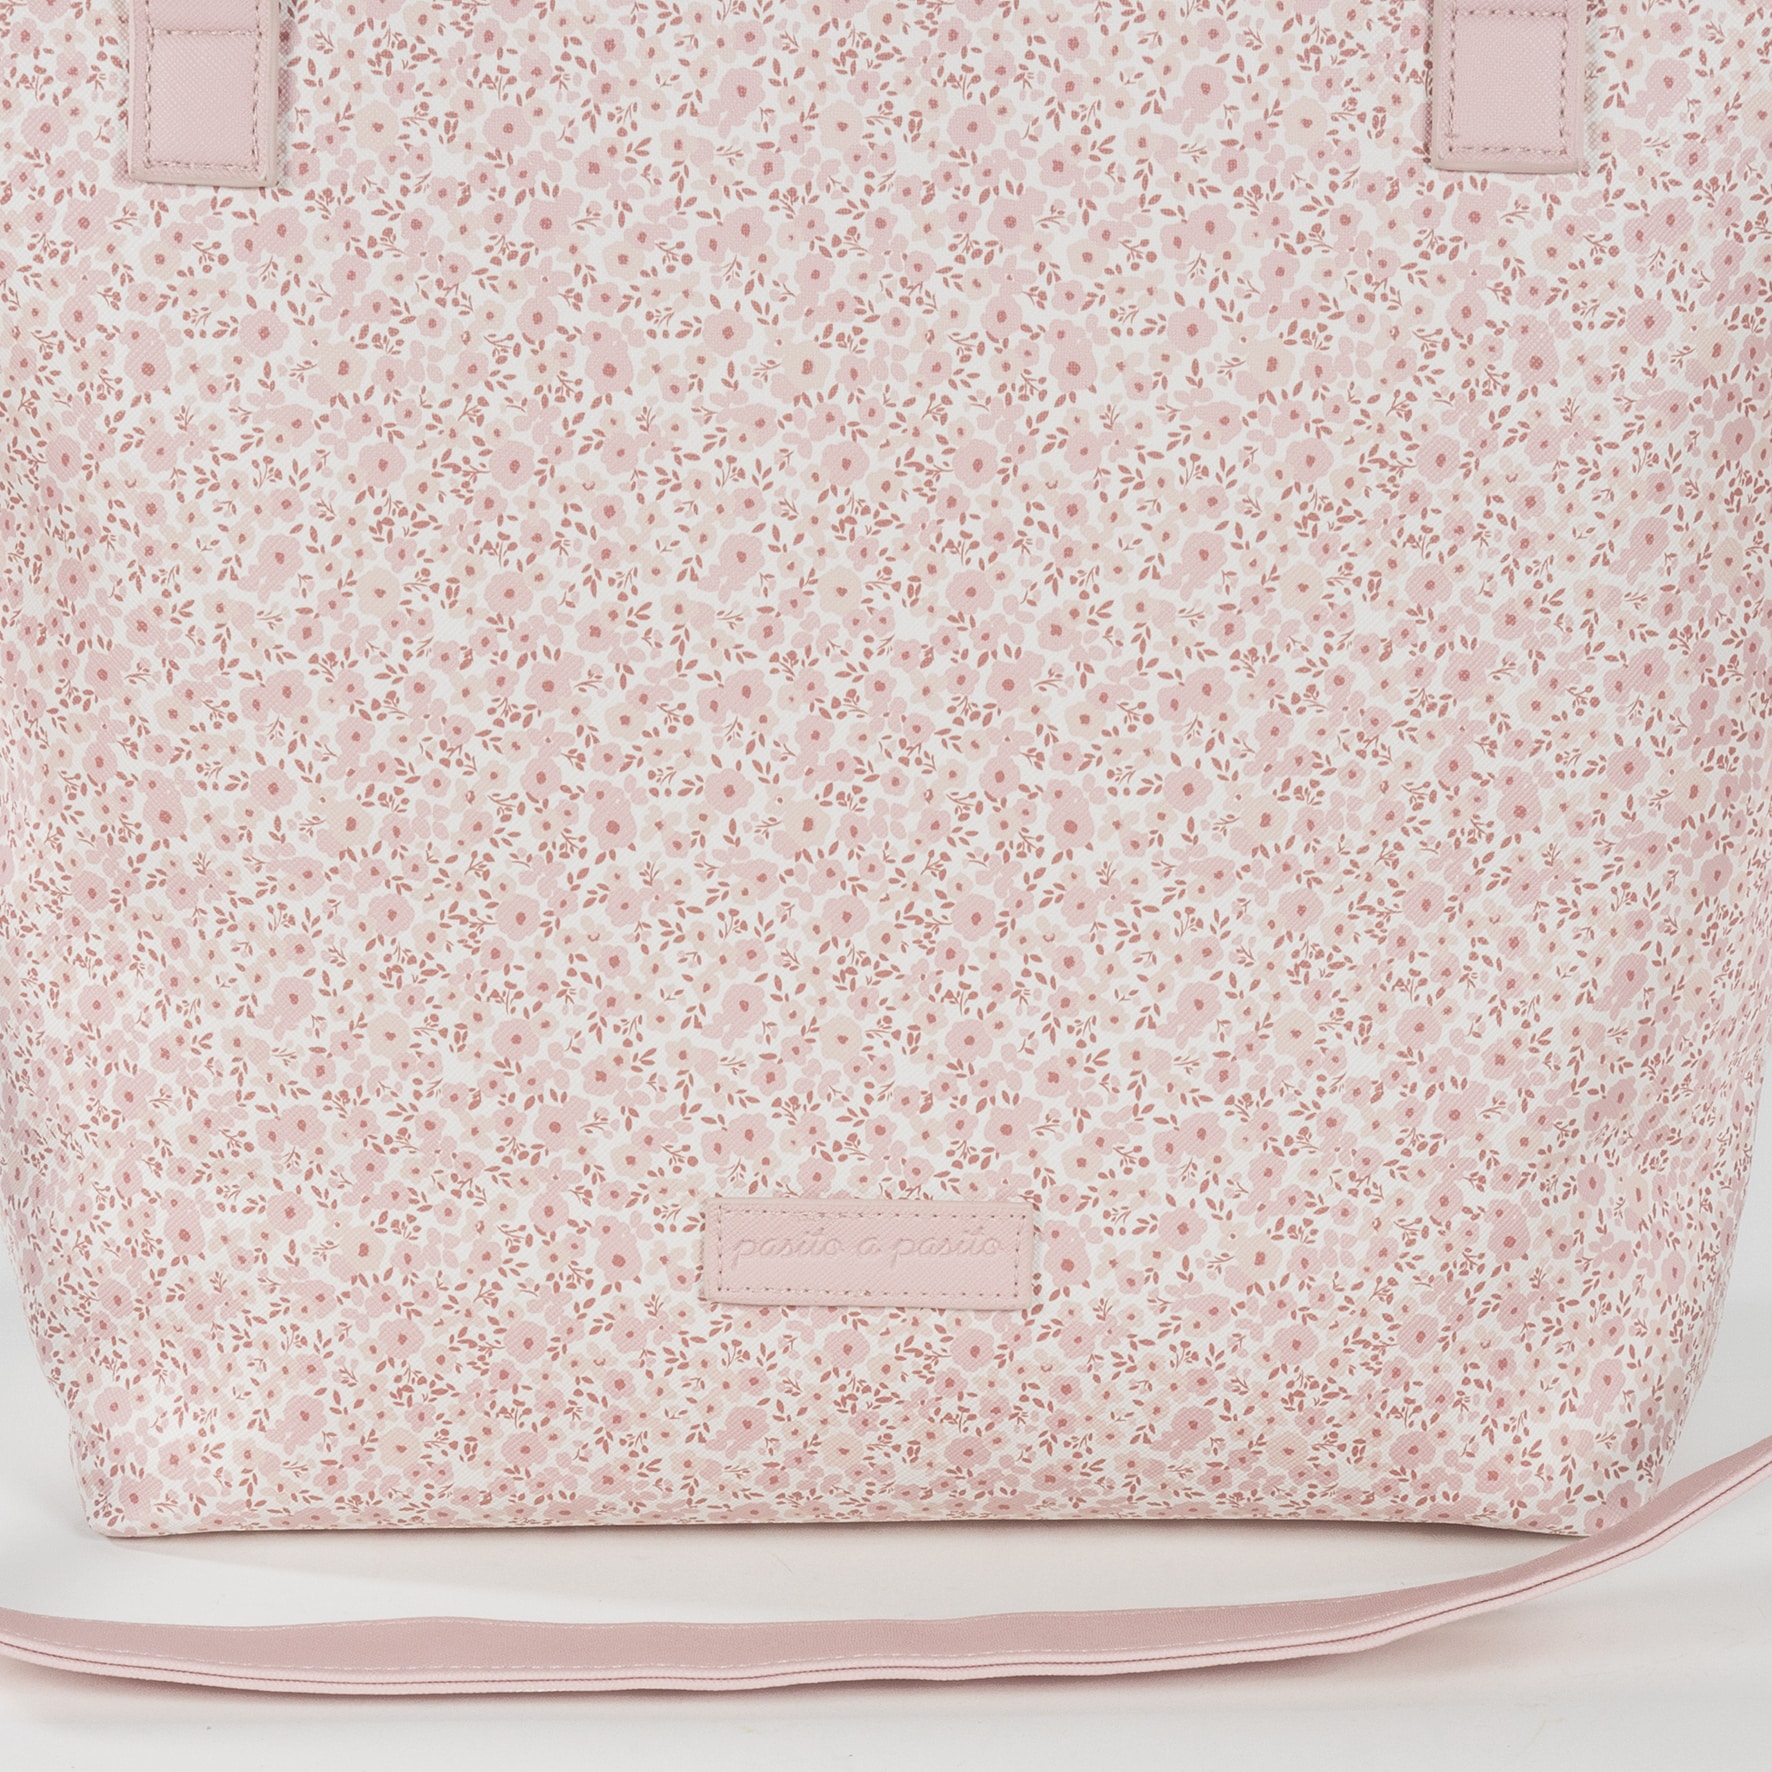 Bolsa Panera Flower Mellow Pasito a Pasito Bolsa panera o bolso para silla de paseo Flower Mellow en polipiel impresa con flores rosa y gris